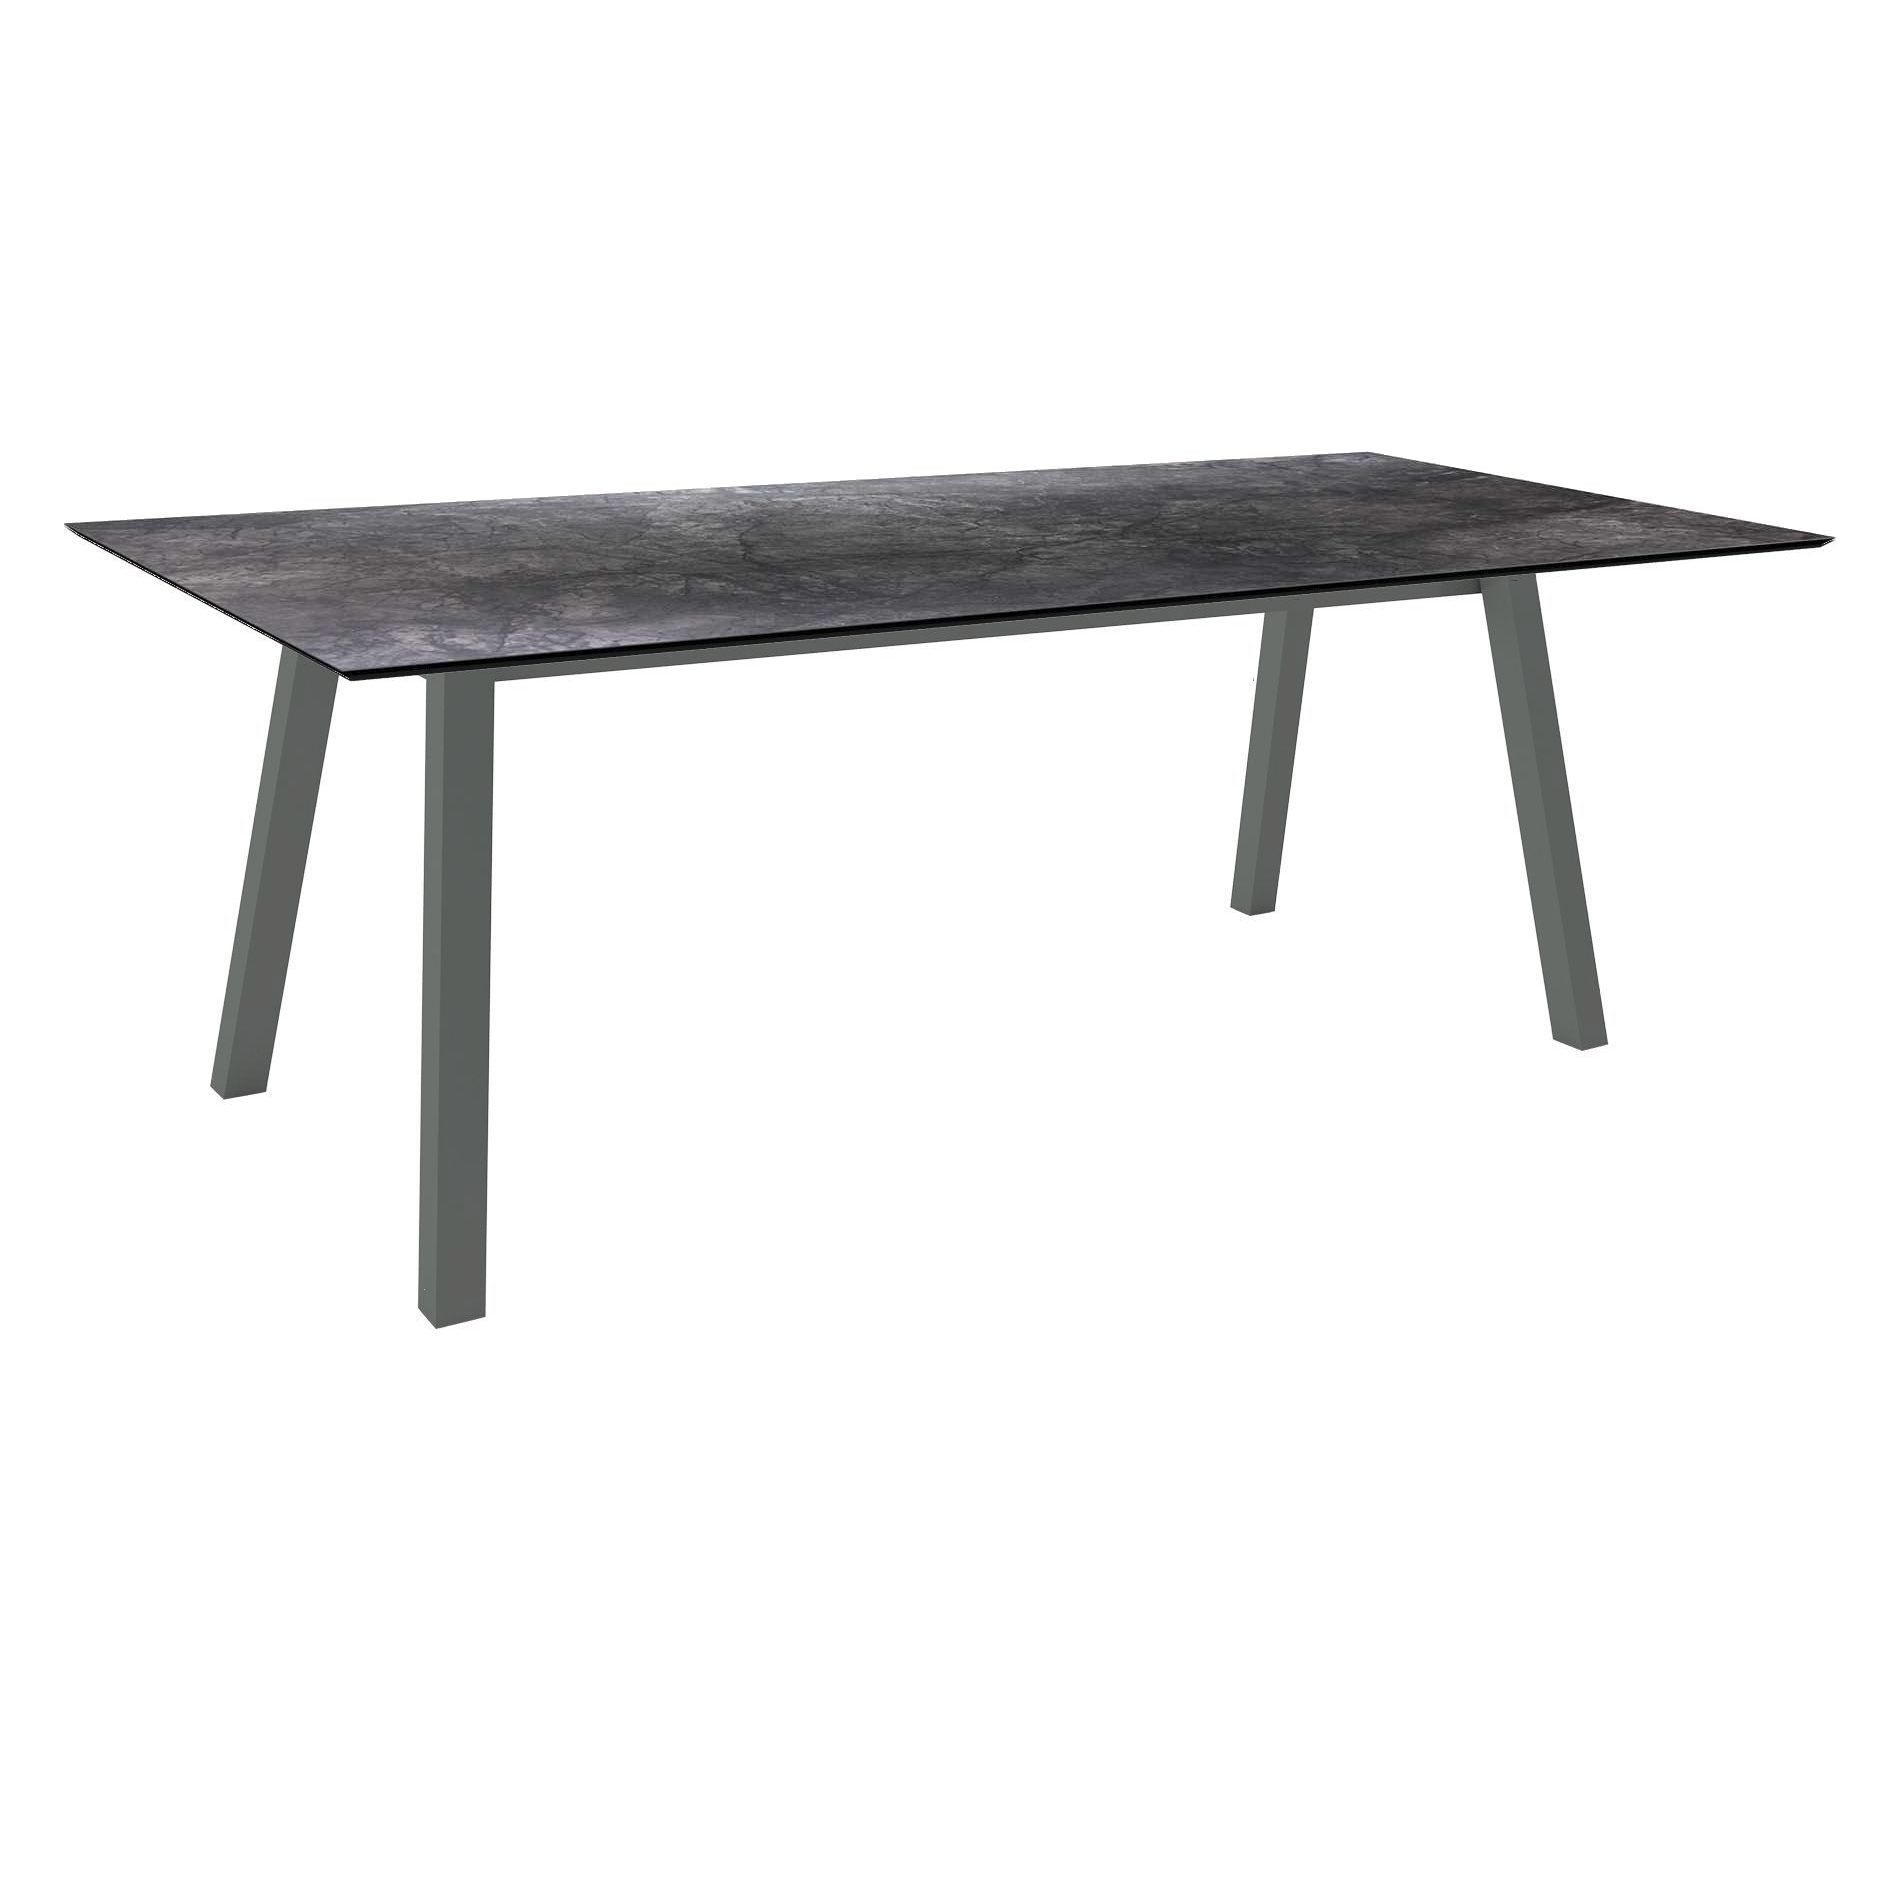 Stern Tisch "Interno", Größe 220x100cm, Alu anthrazit, Vierkantrohr, Tischplatte HPL Dark Marble